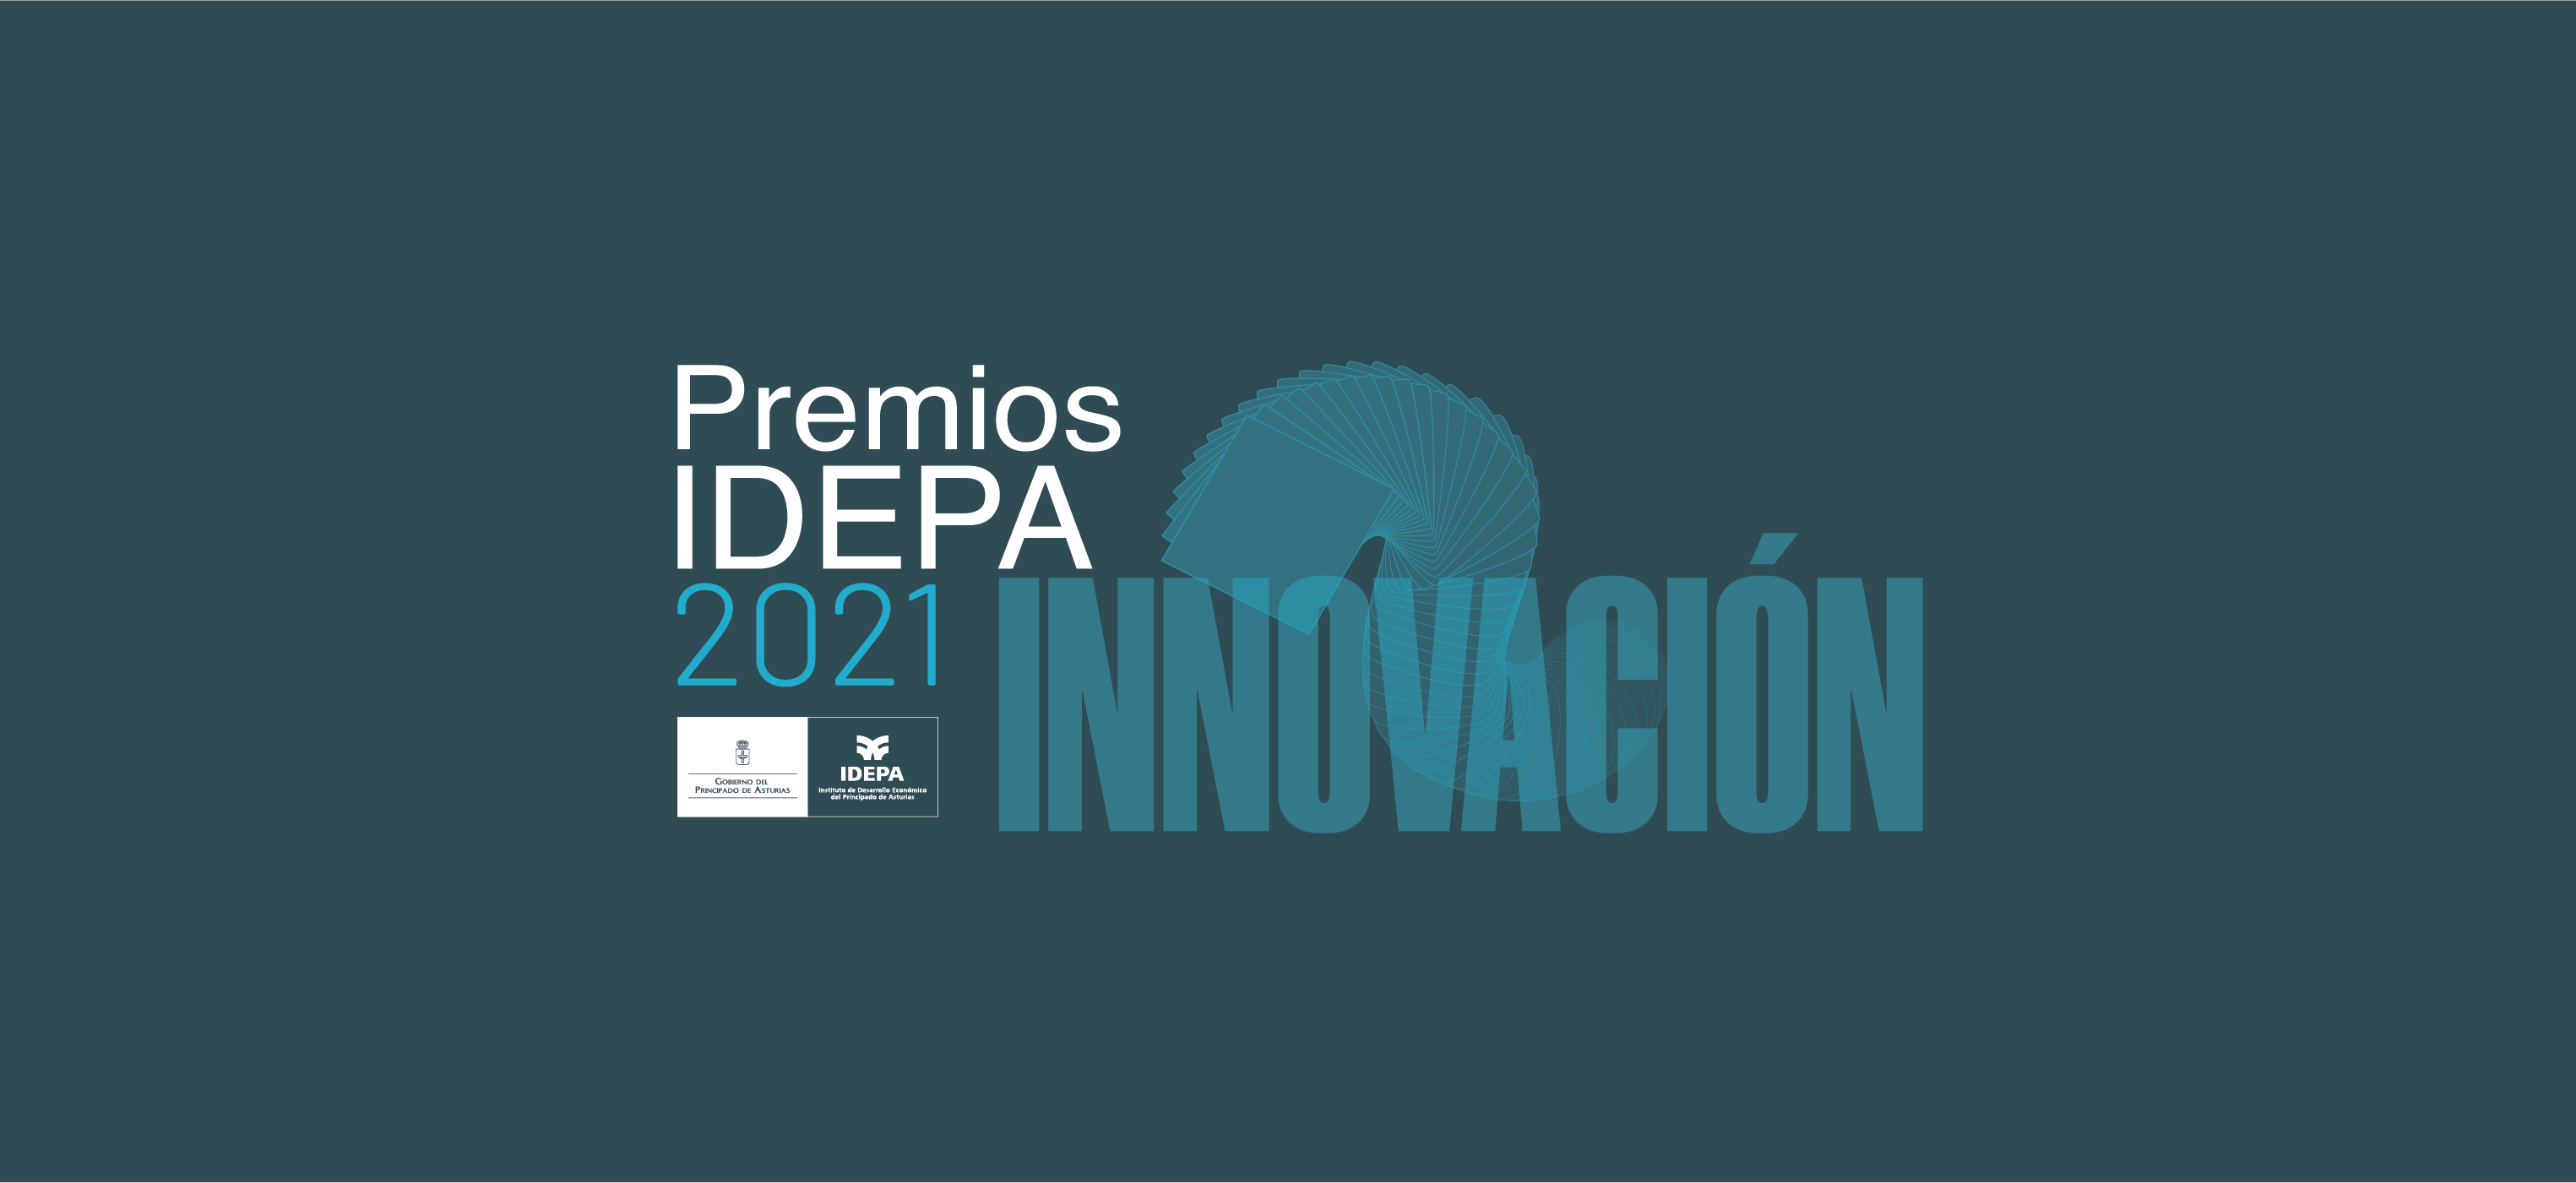 Excade recibe el premio IDEPA a la Innovación 2021